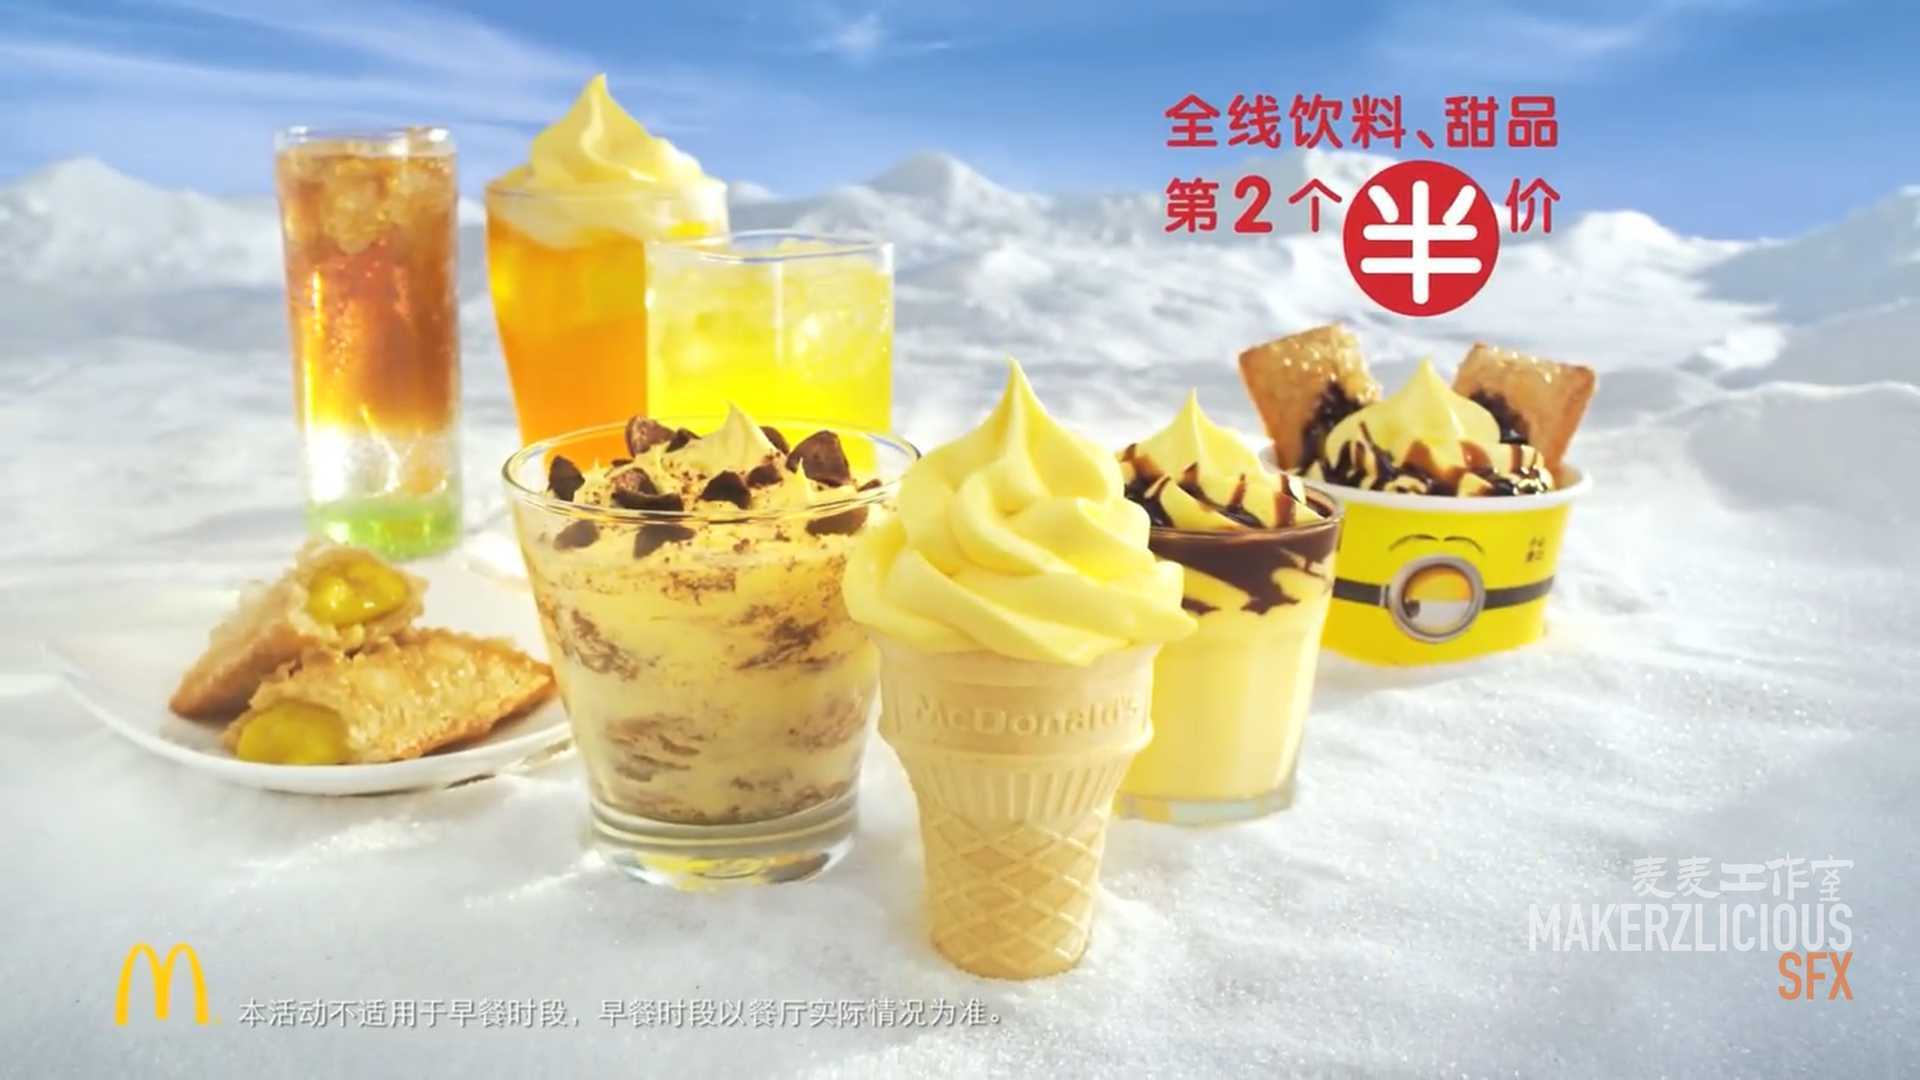 麦当劳&小黄人 - 冰镇一夏